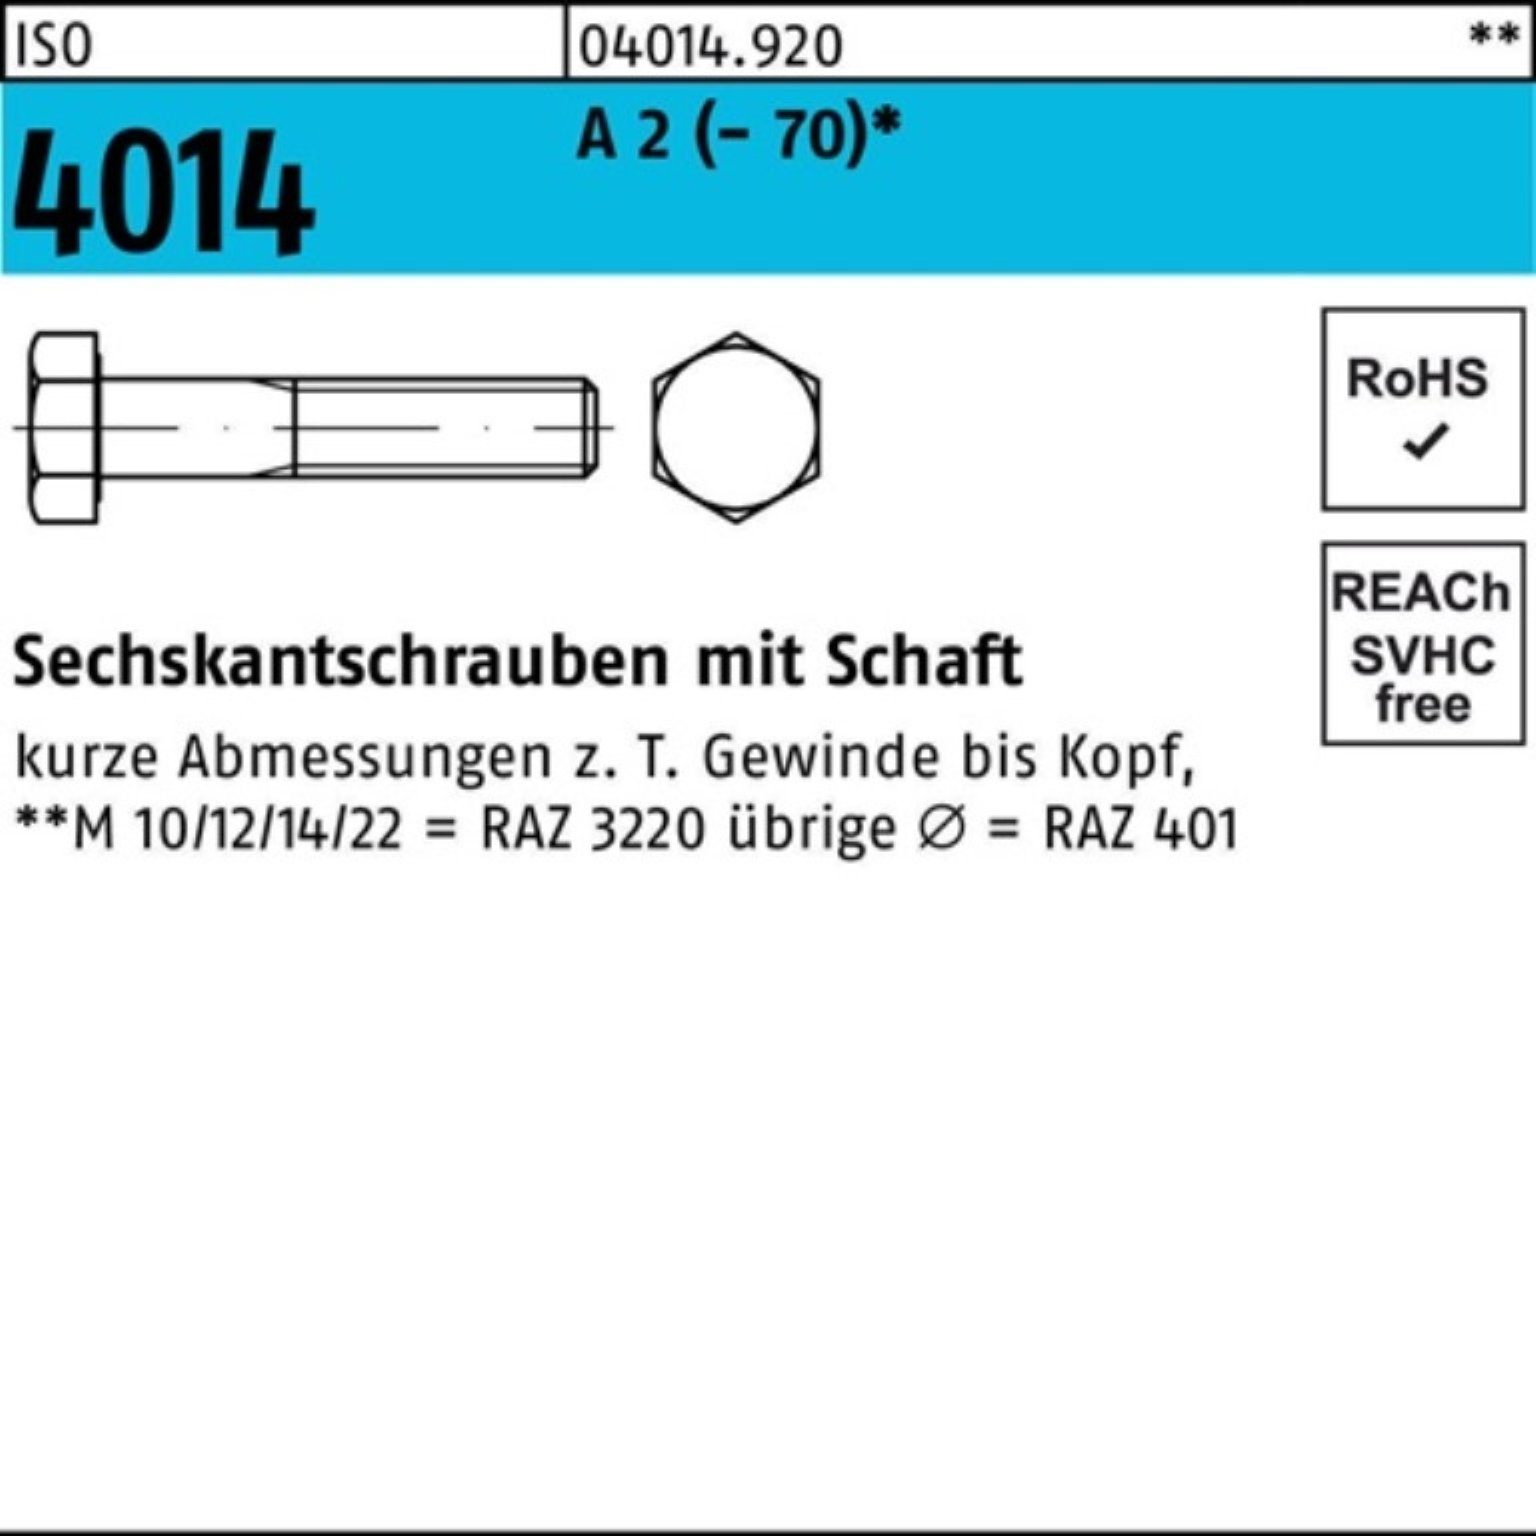 Bufab Sechskantschraube 100er Pack Sechskantschraube ISO 4014 Schaft M8x 170 A 2 (70) 25 St